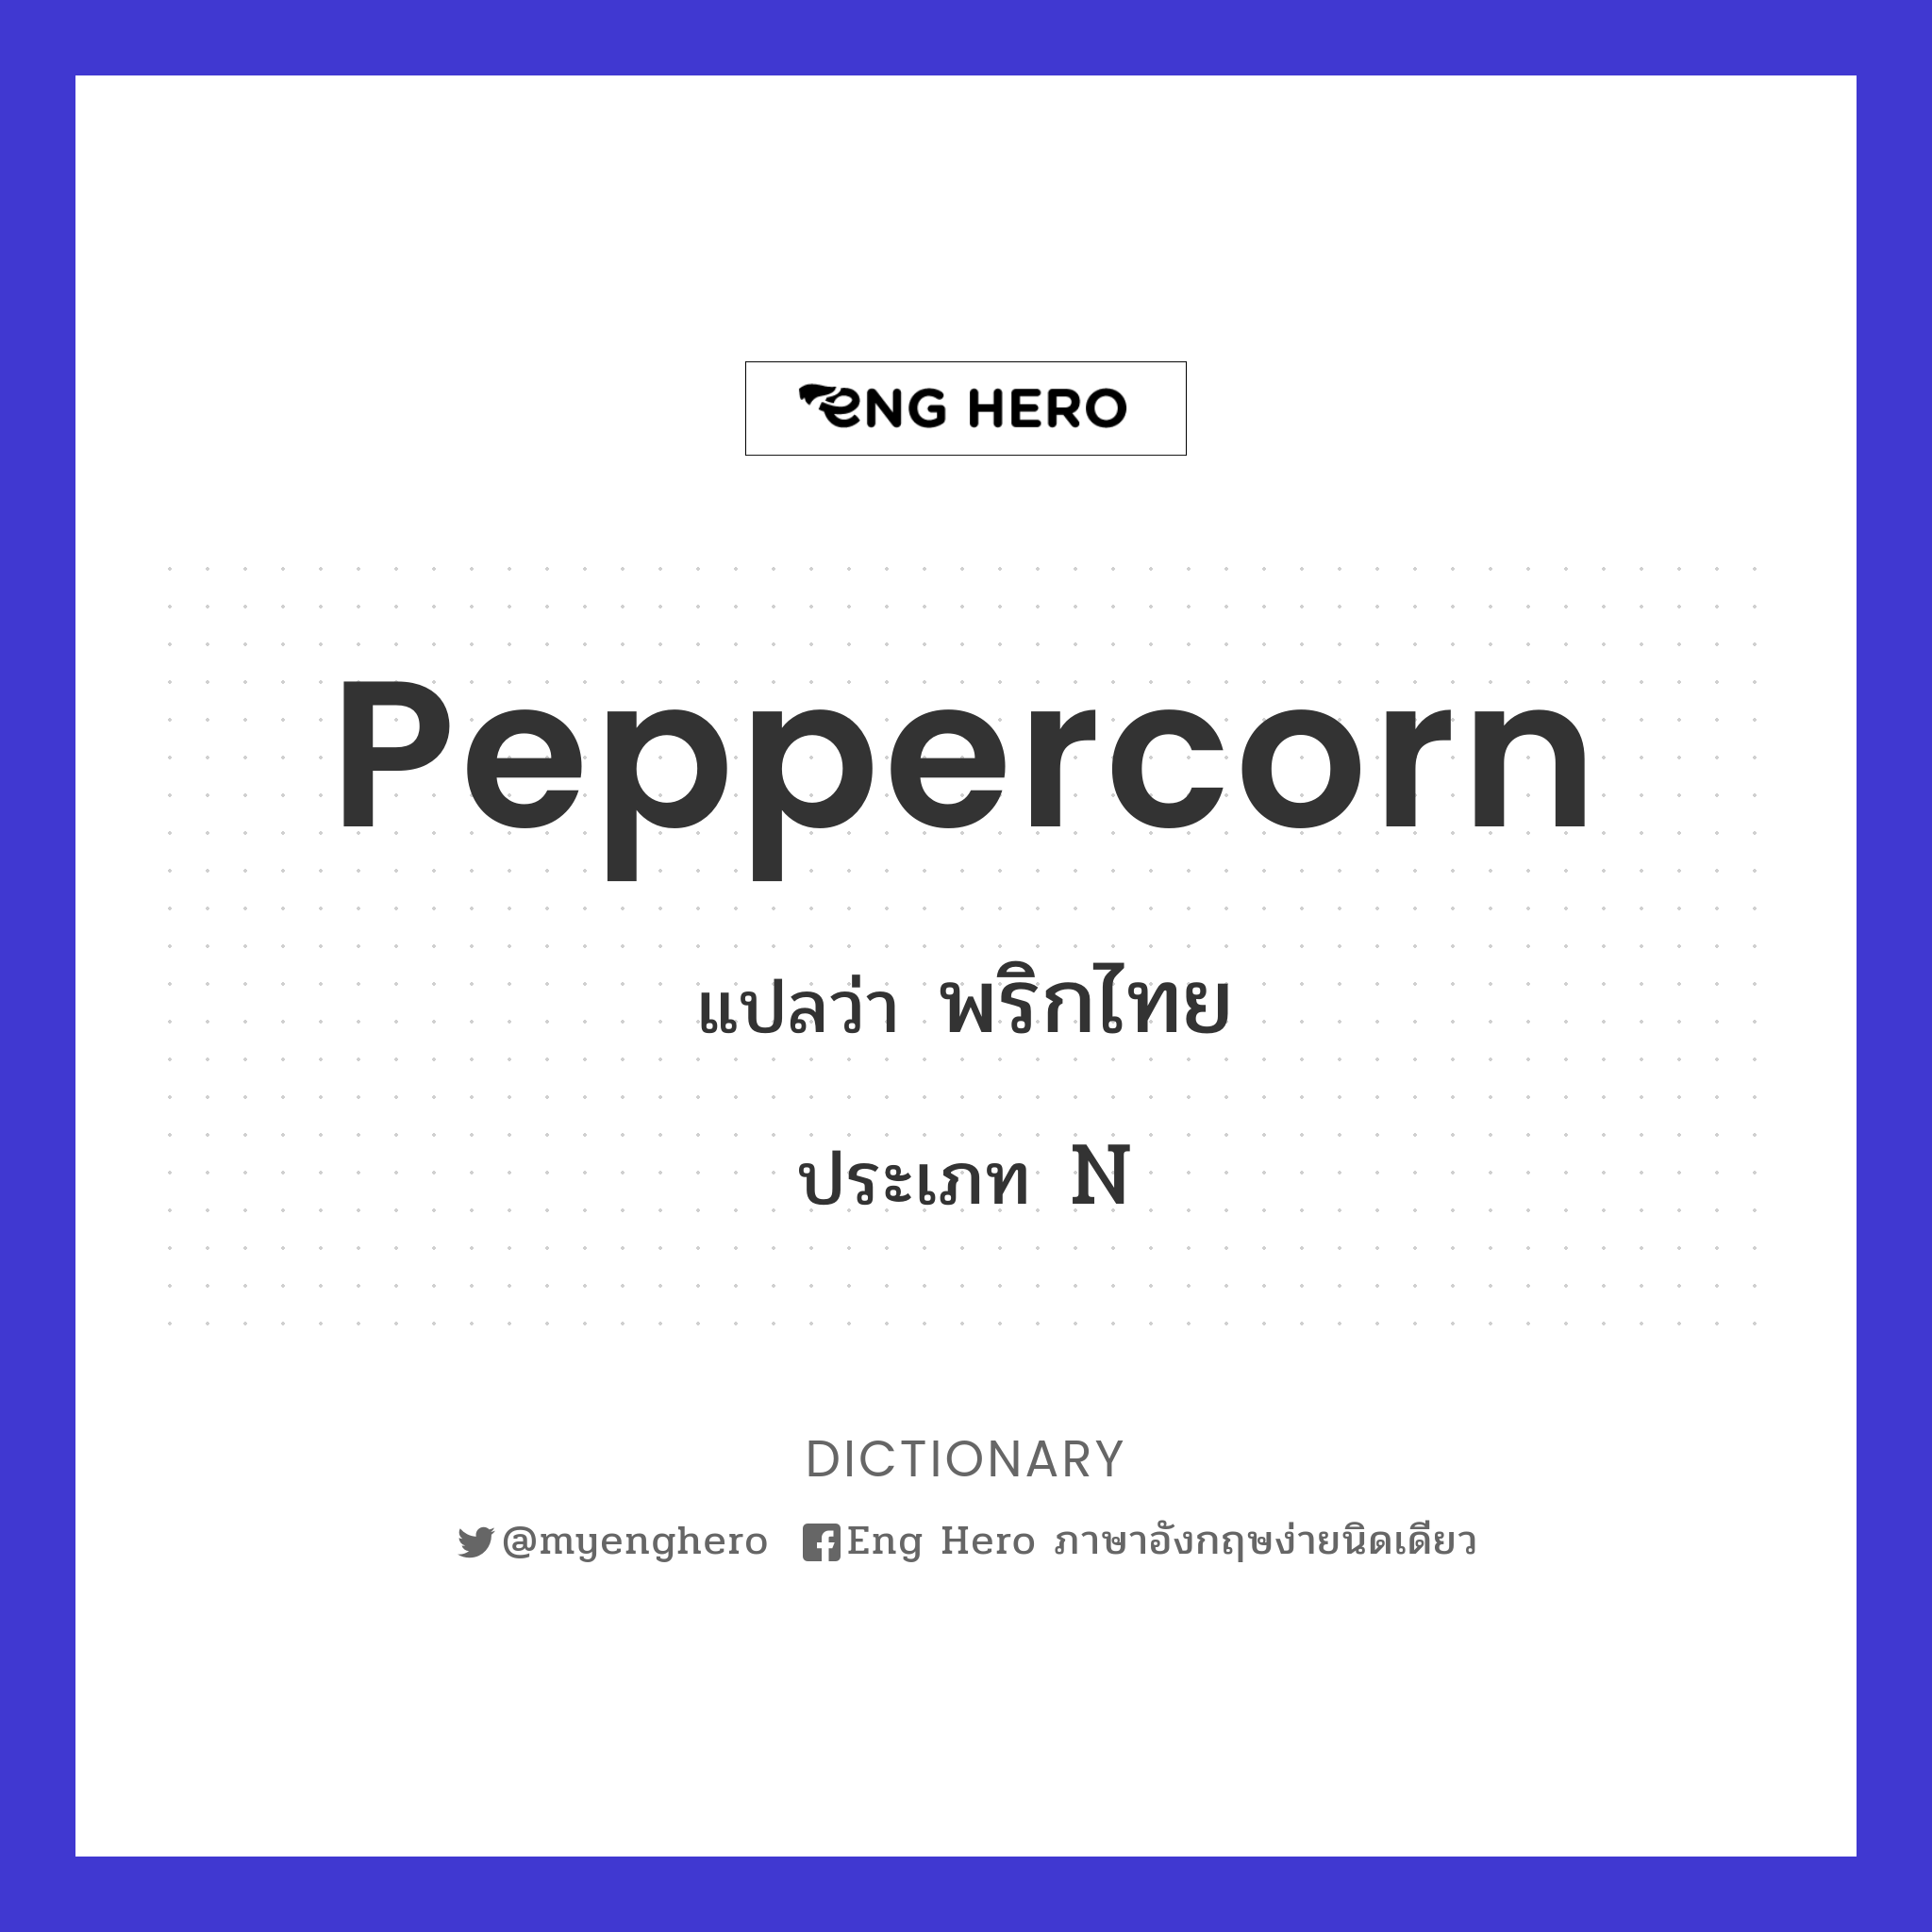 peppercorn